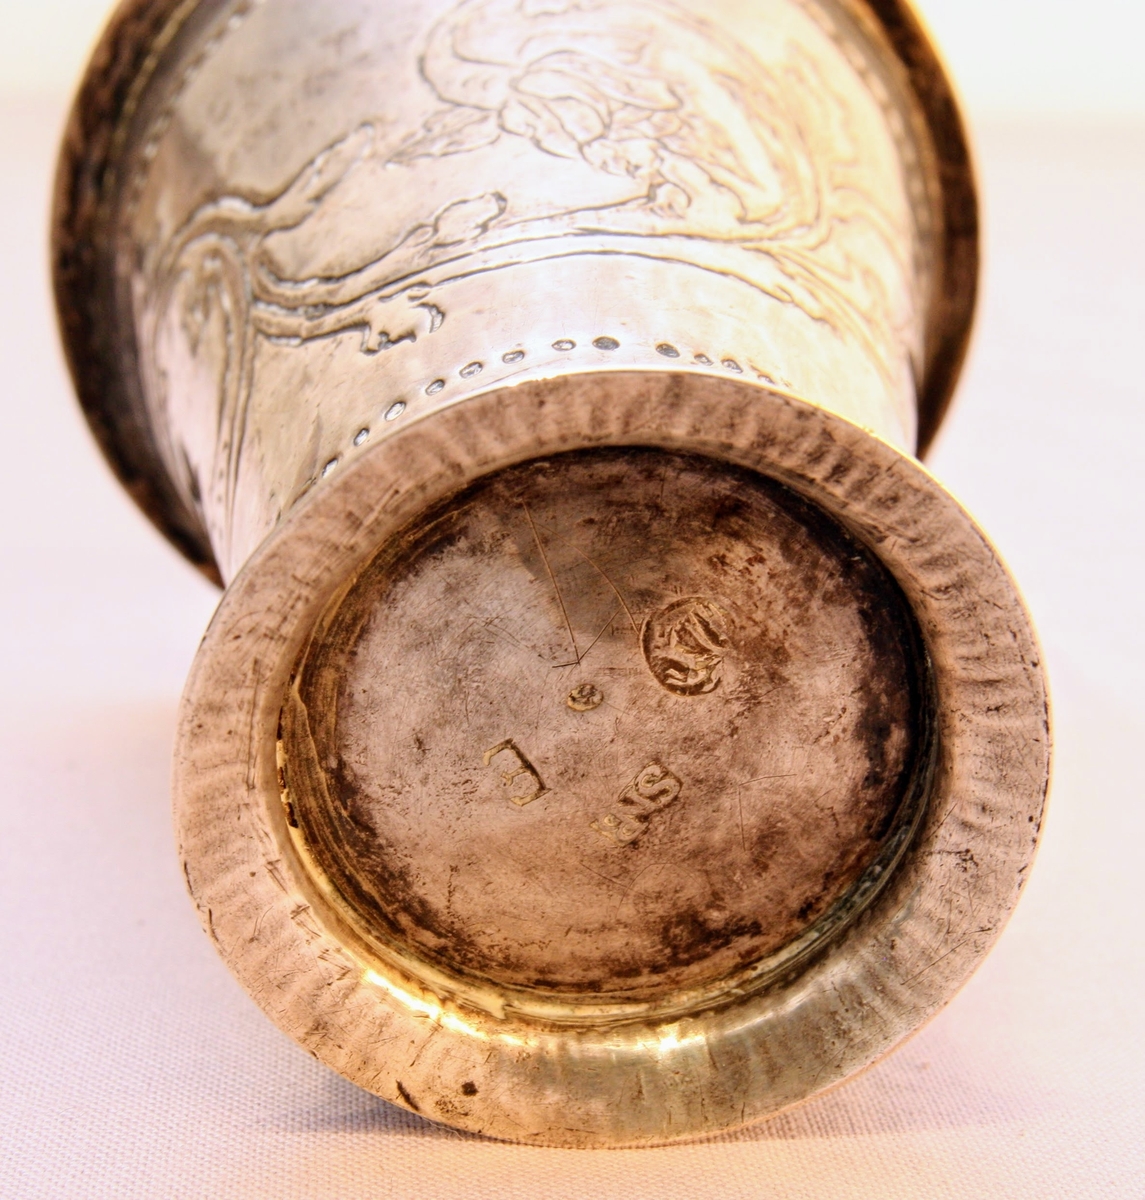 Bägare av silver tillverkad av guldsmed Sven Pettersson Nyberg, Varberg. Med etsad dekor föreställande rocailler/akantusblad och pärlstavar. Från år 1763. Stämplar i botten.